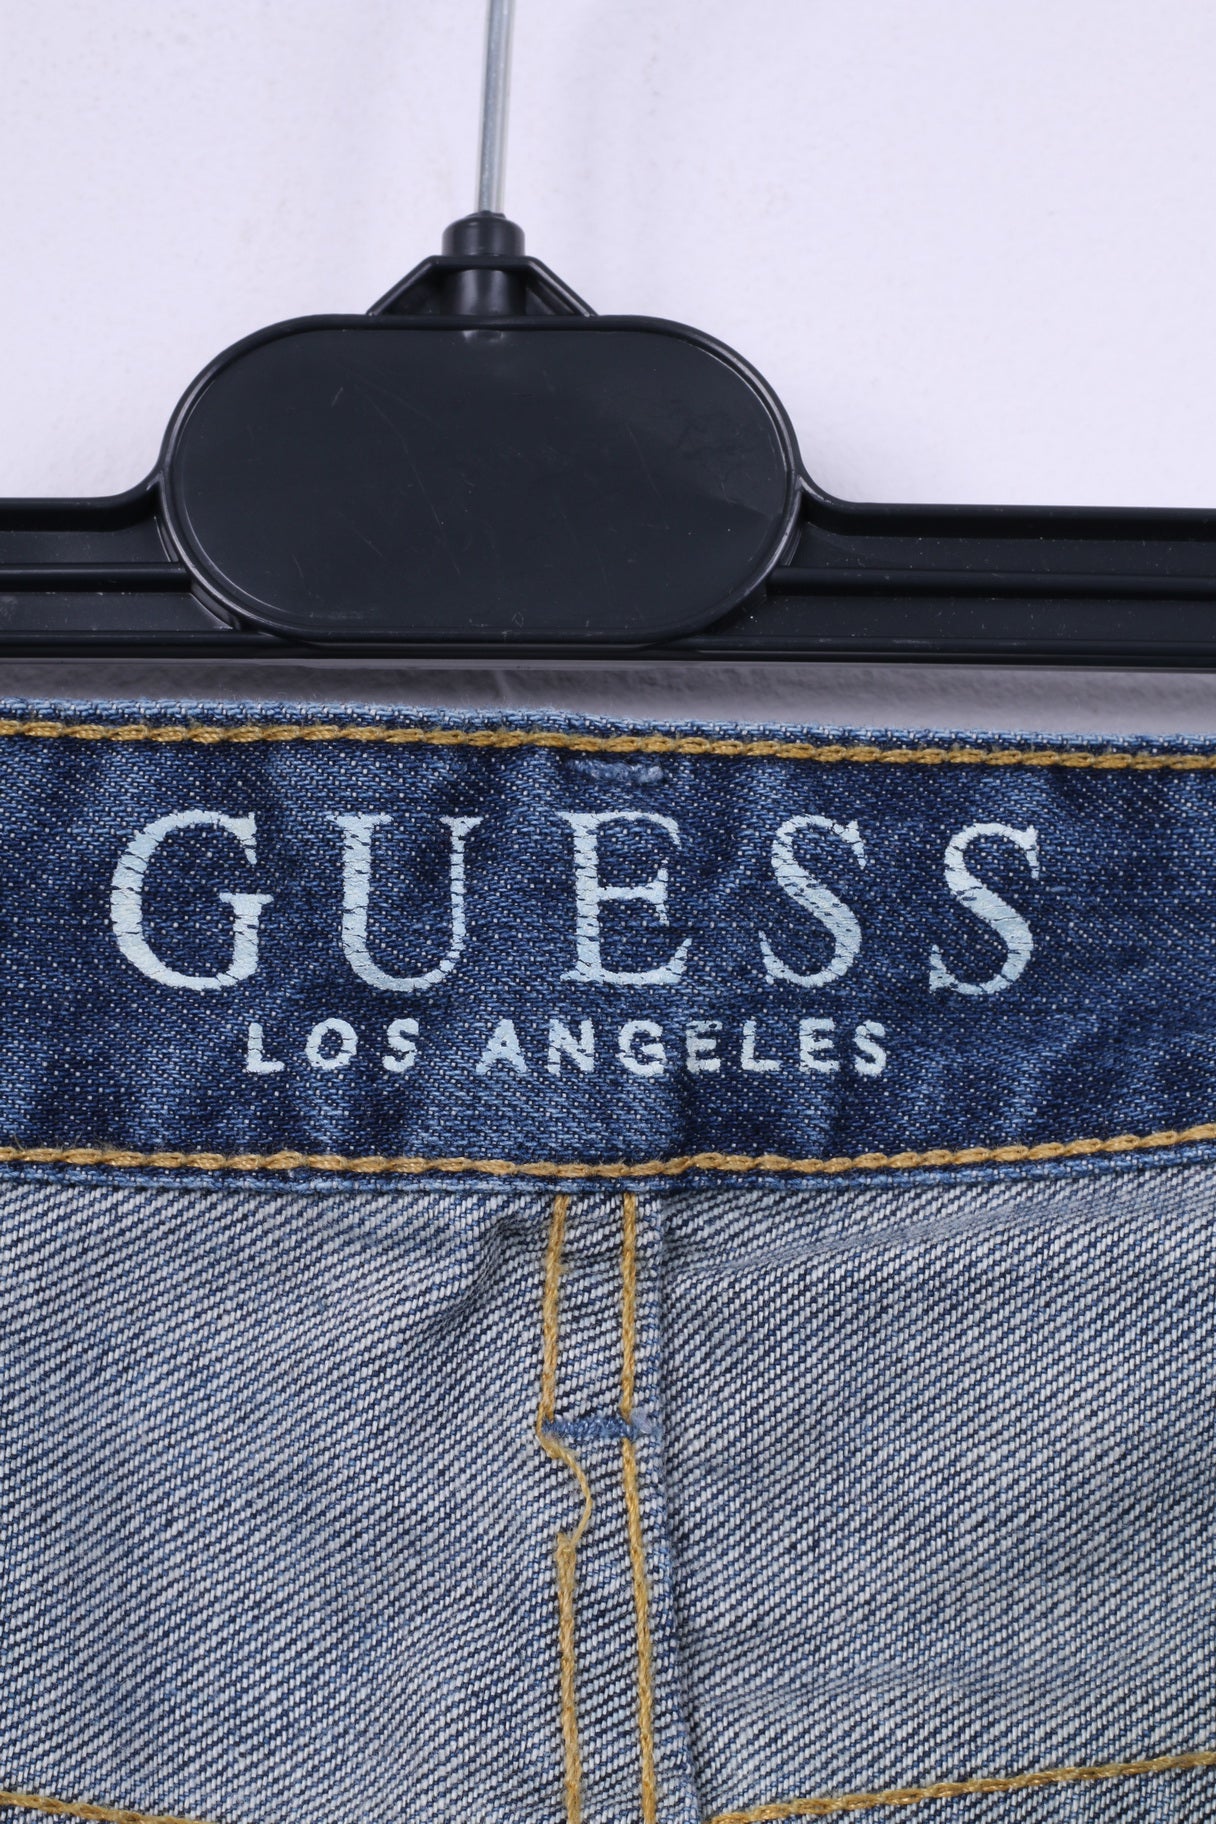 Guess Los Angeles Mens W32 Trousers Denim Cotton Jeans Straight Leg Pants